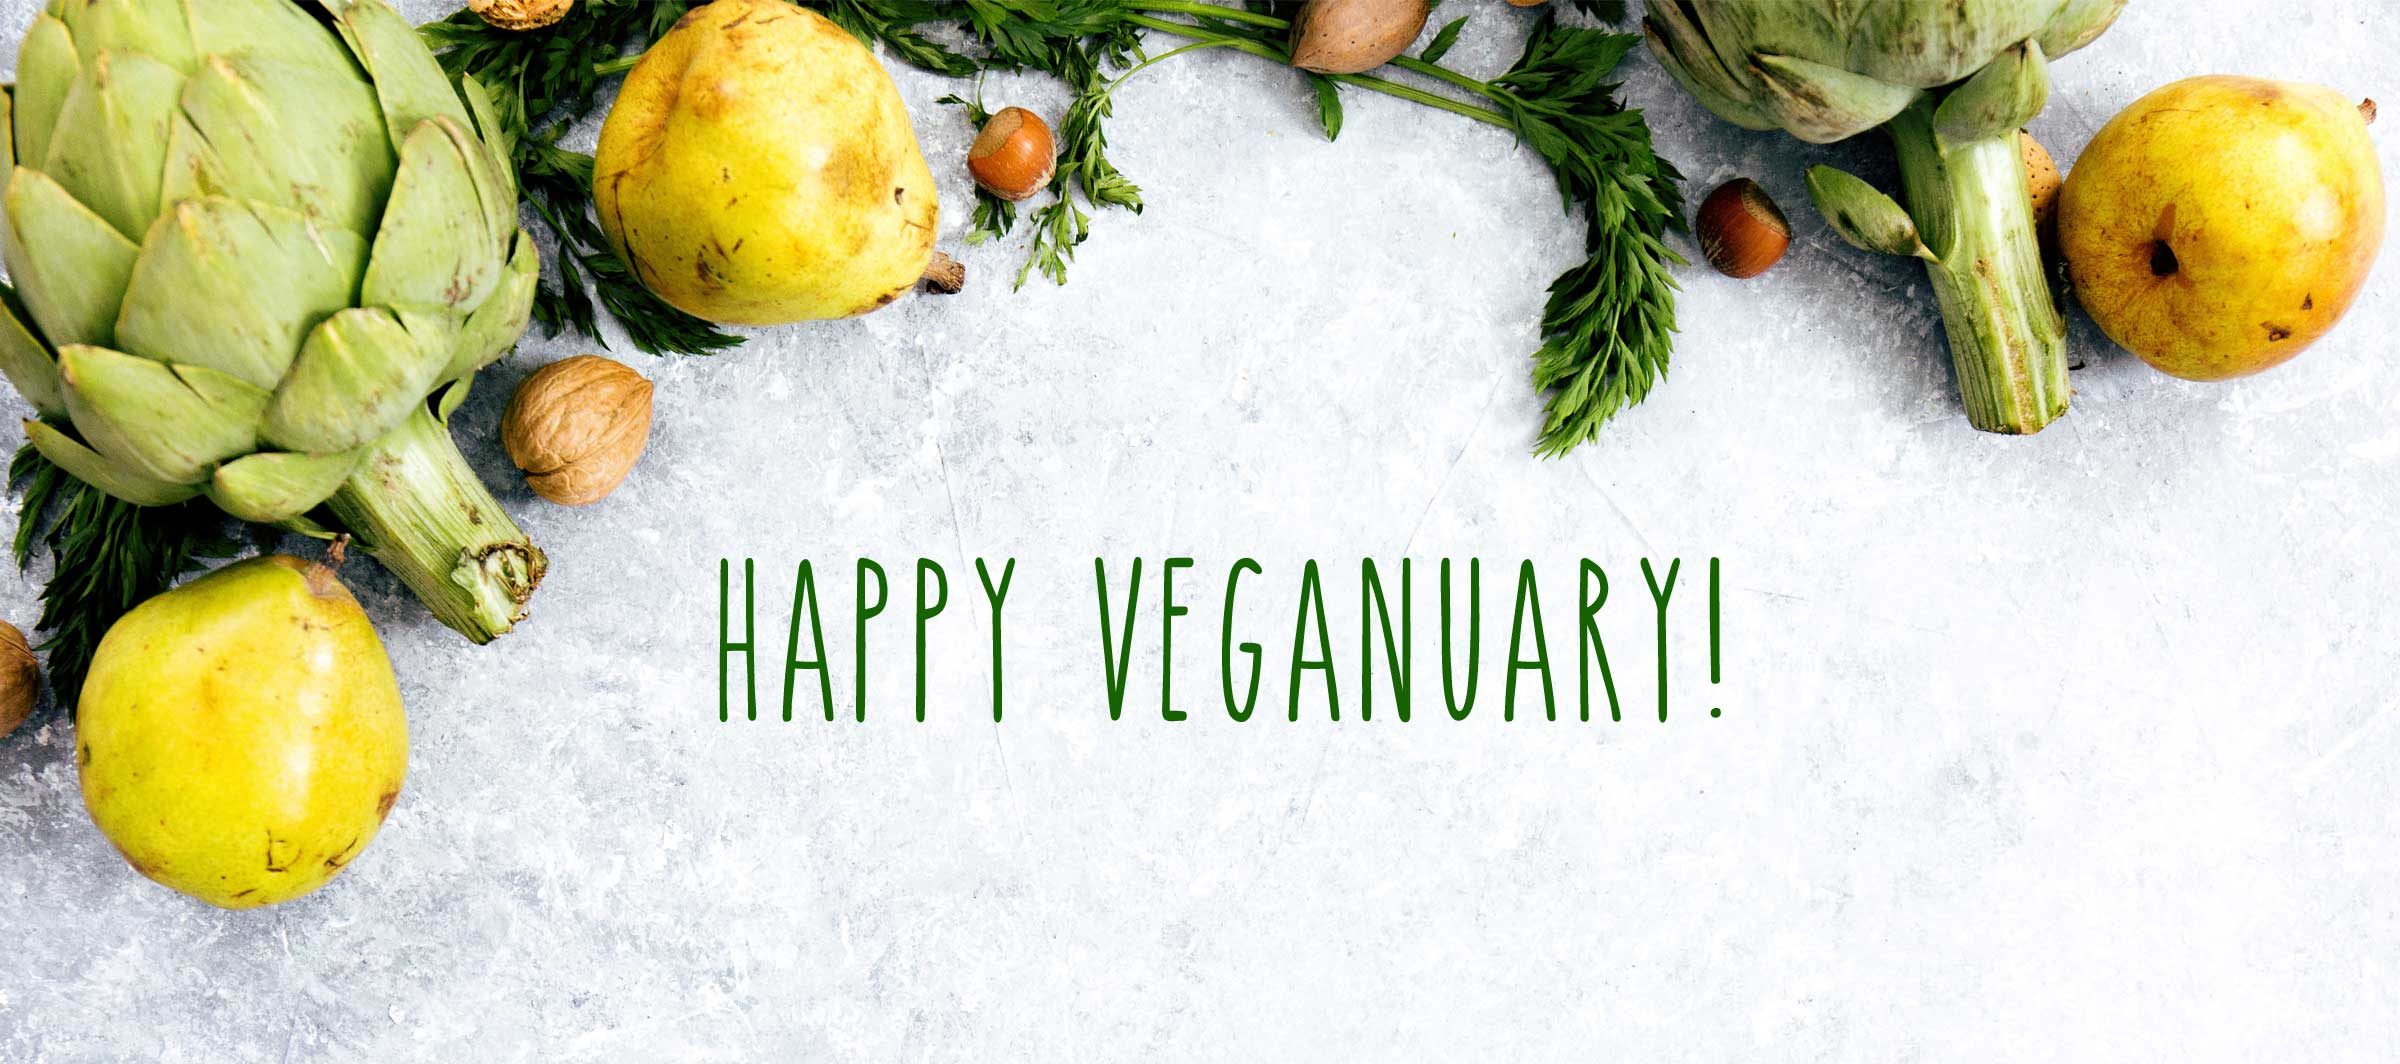 Happy Veganuary!